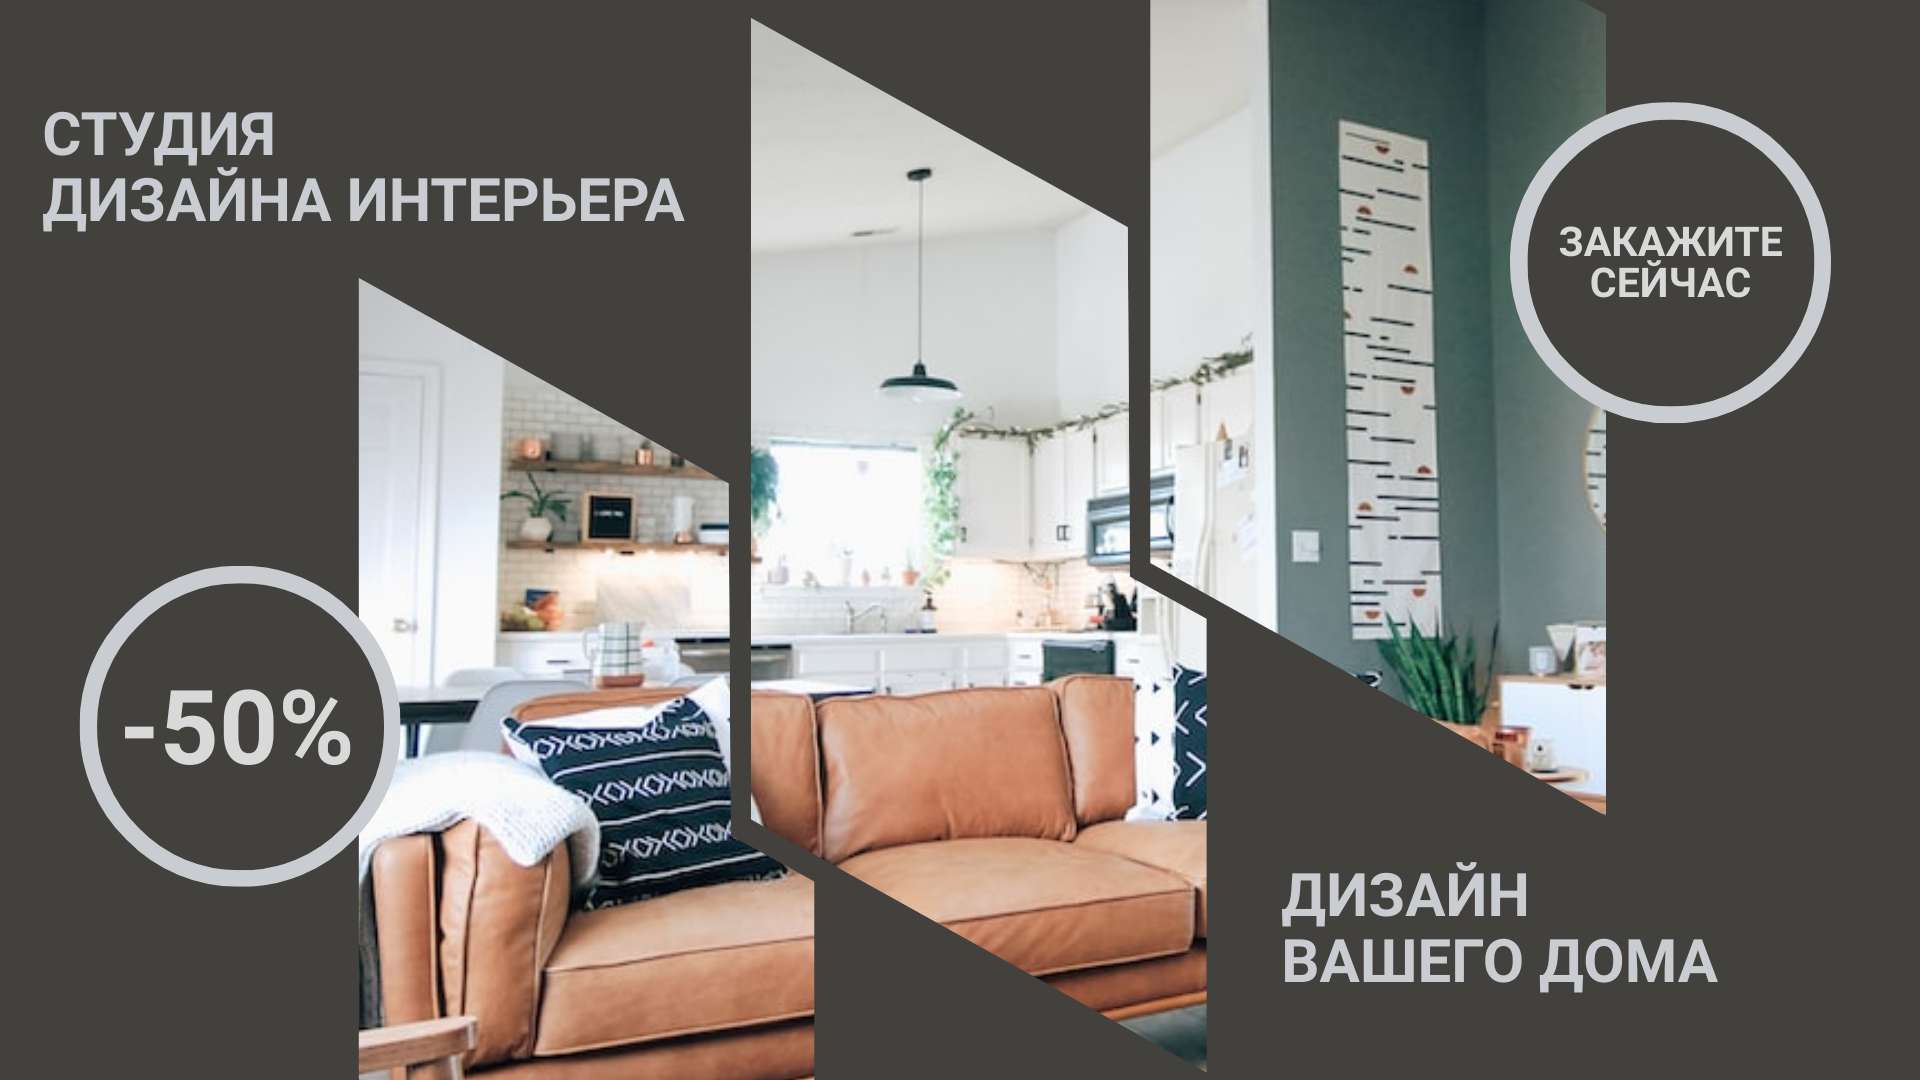 Необычный дизайн интерьера | ВКонтакте